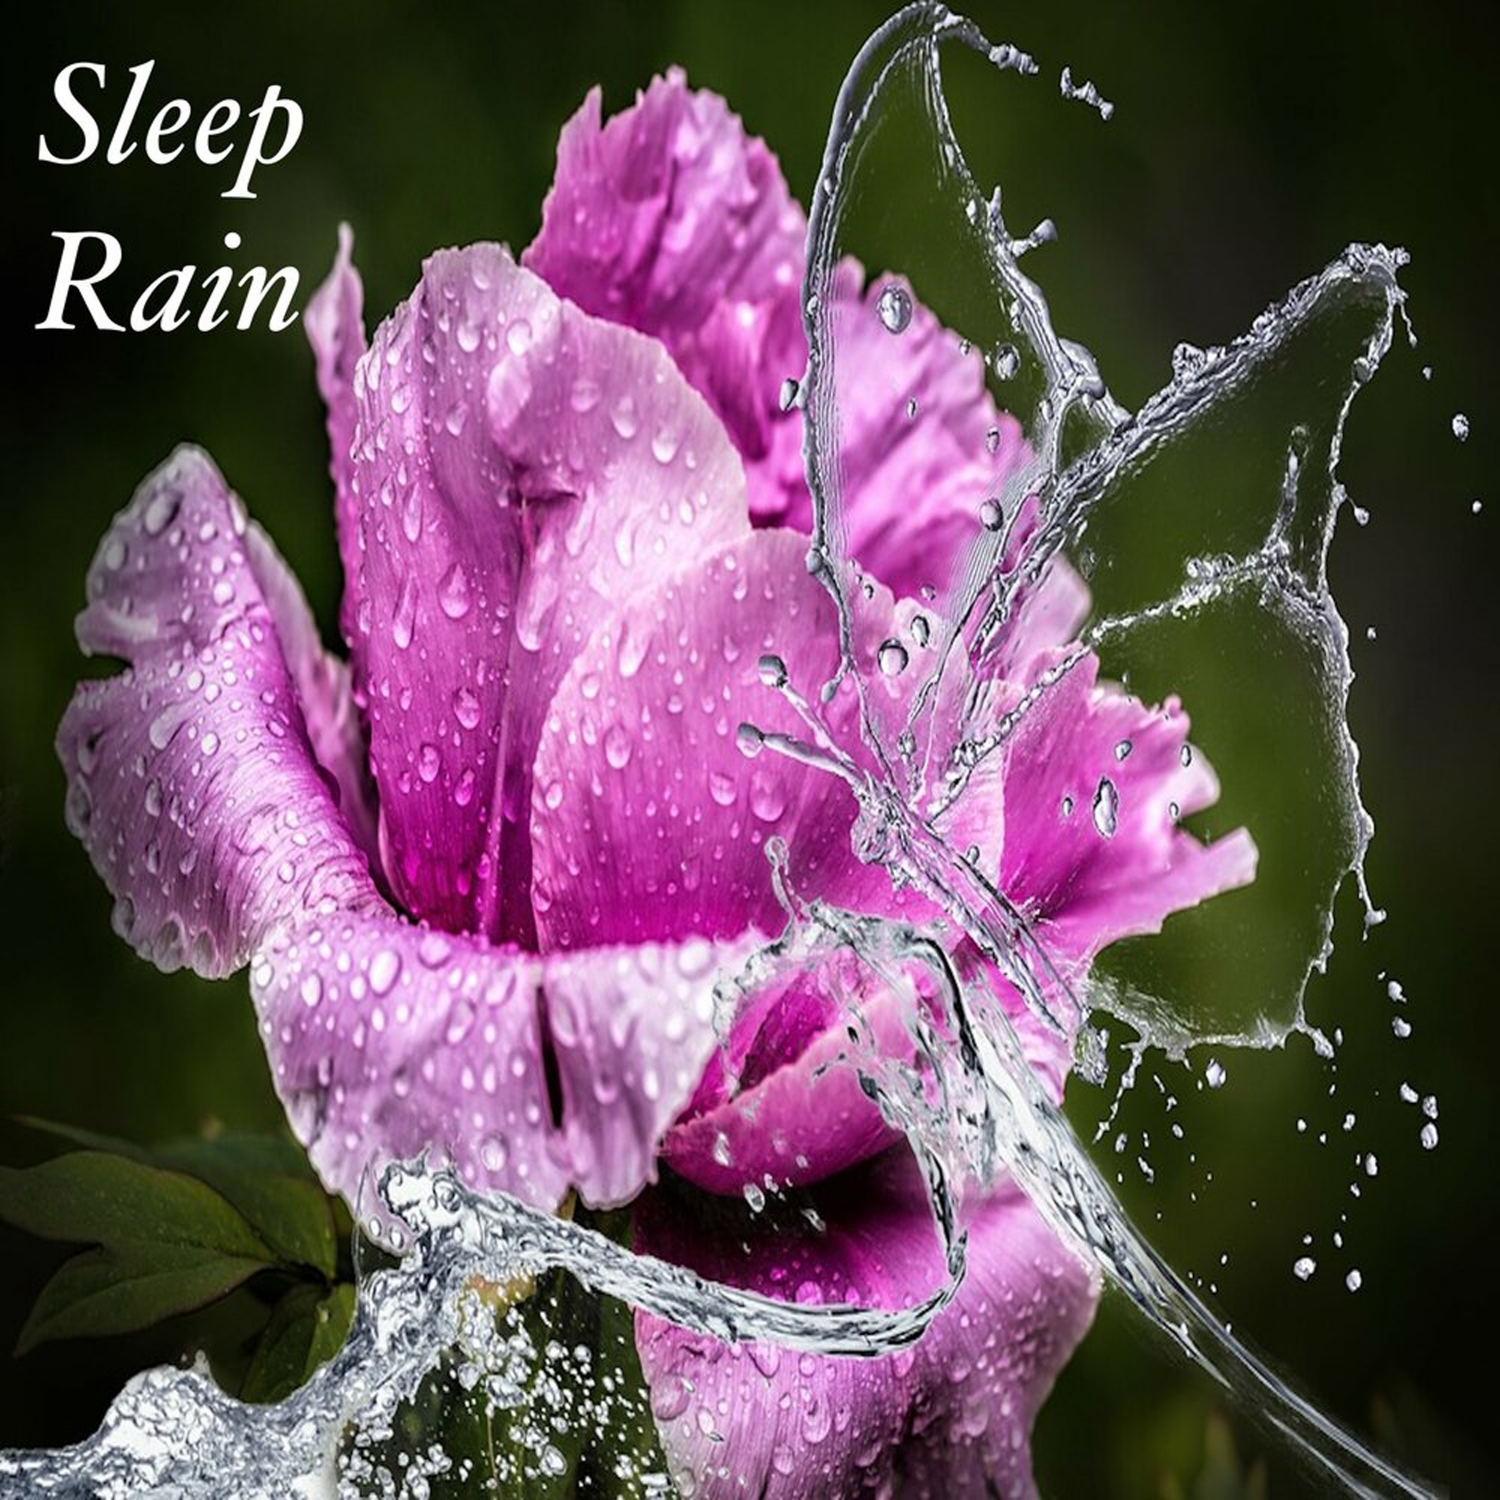 Sleep Rain: Loopable Rain Sounds for Sleep, Insomnia, Meditation, Zen, Yoga, Peaceful Nights